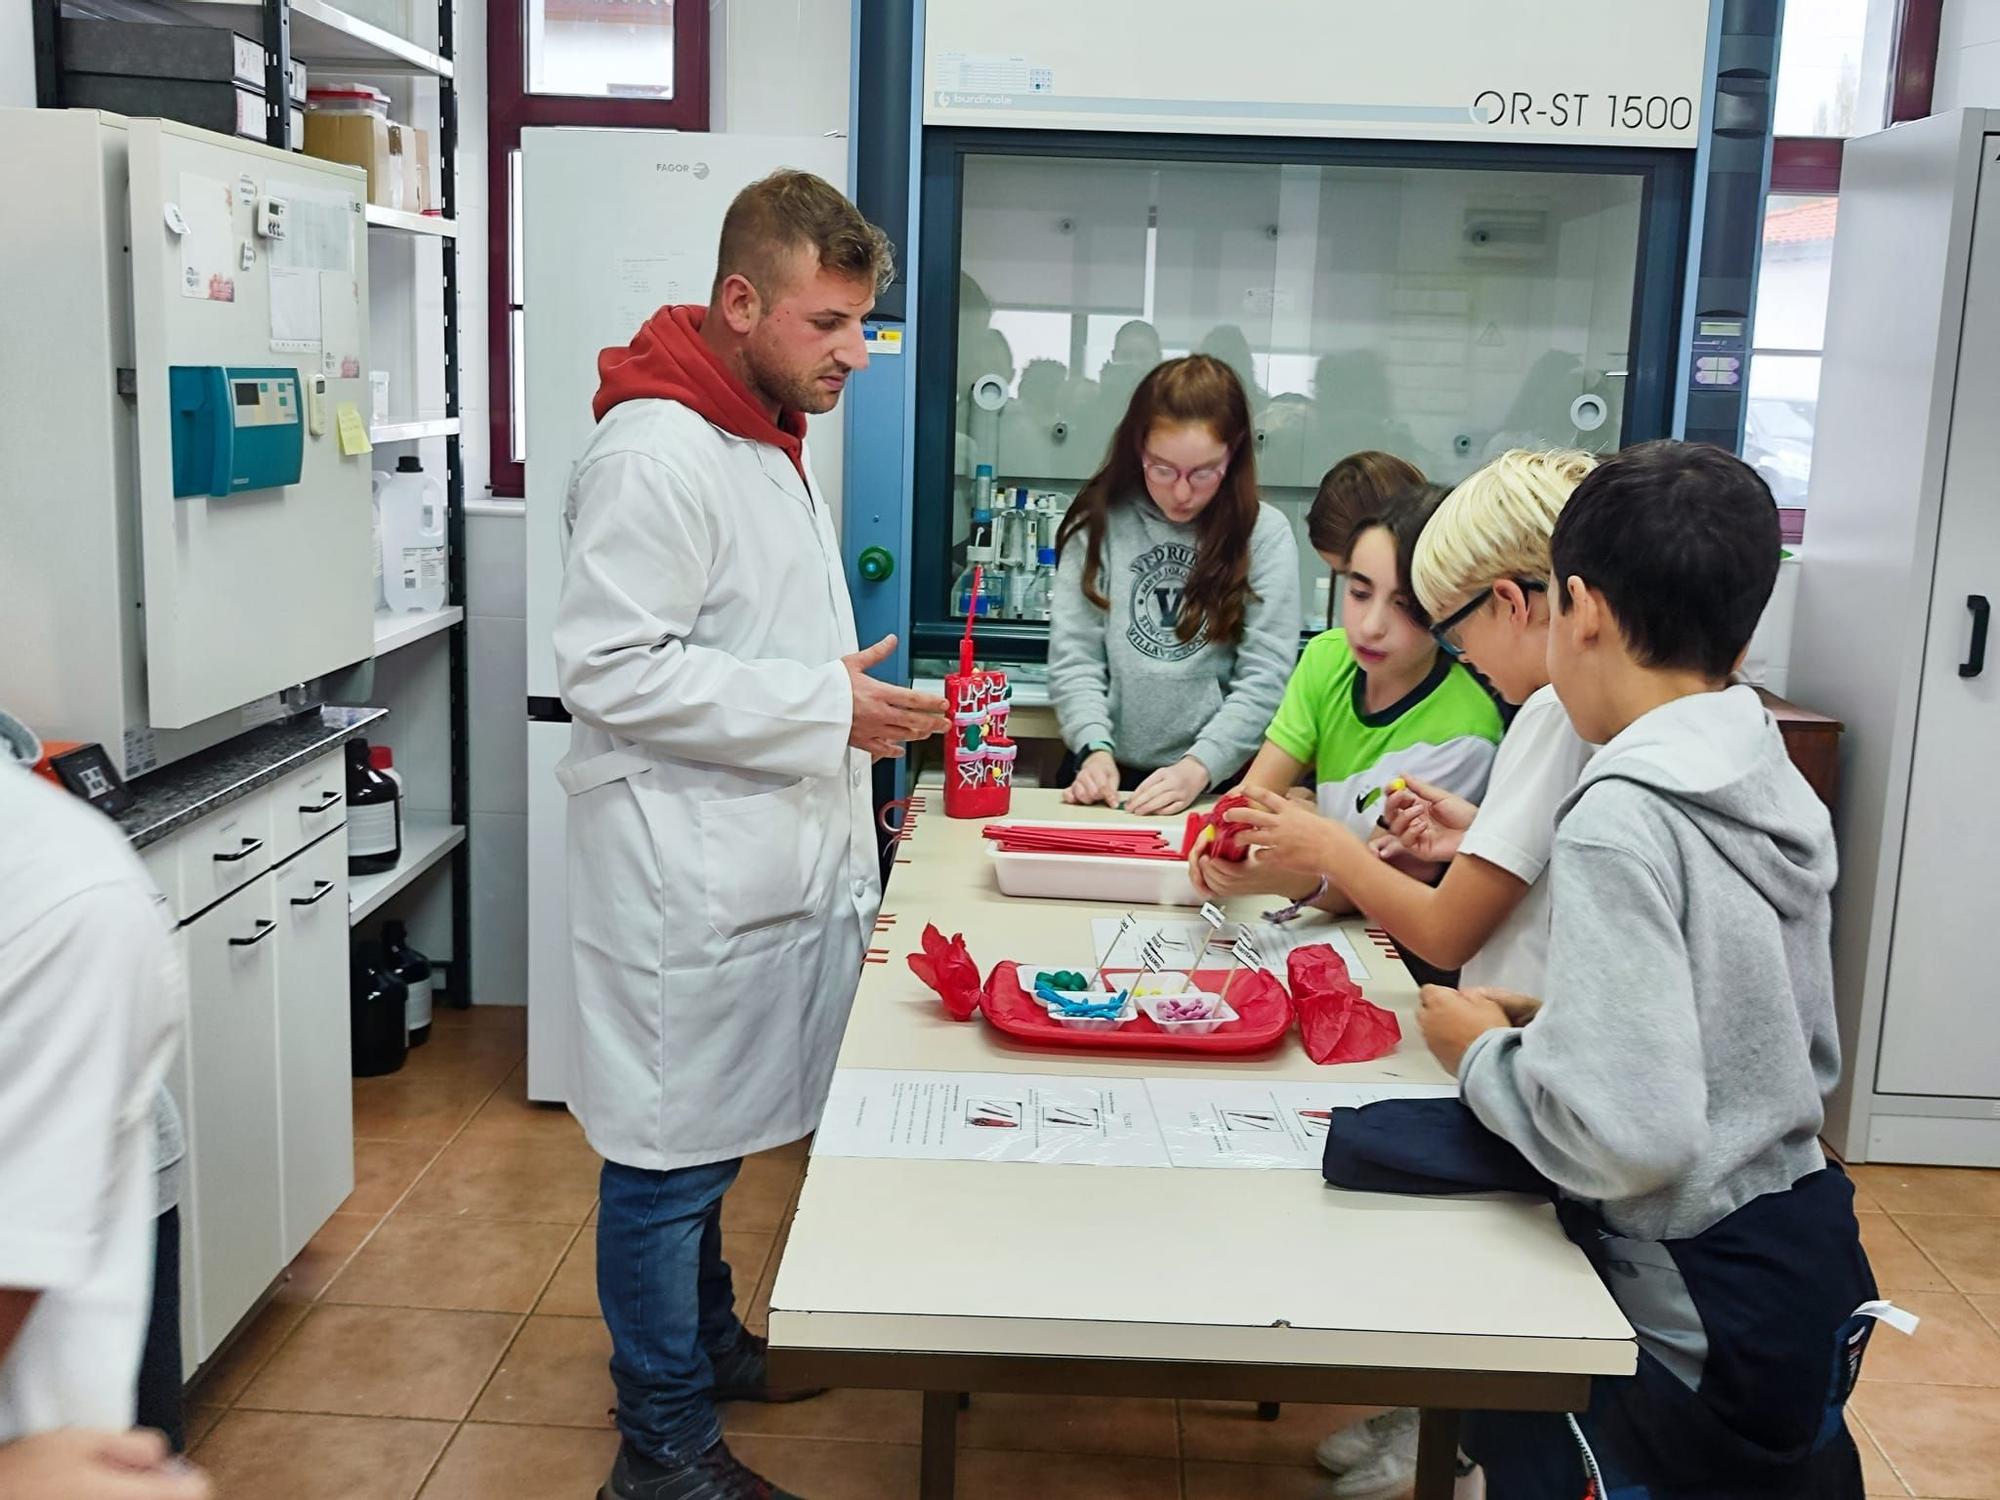 El Serida crea pequeños científicos en Villaviciosa: "Es una pasada"